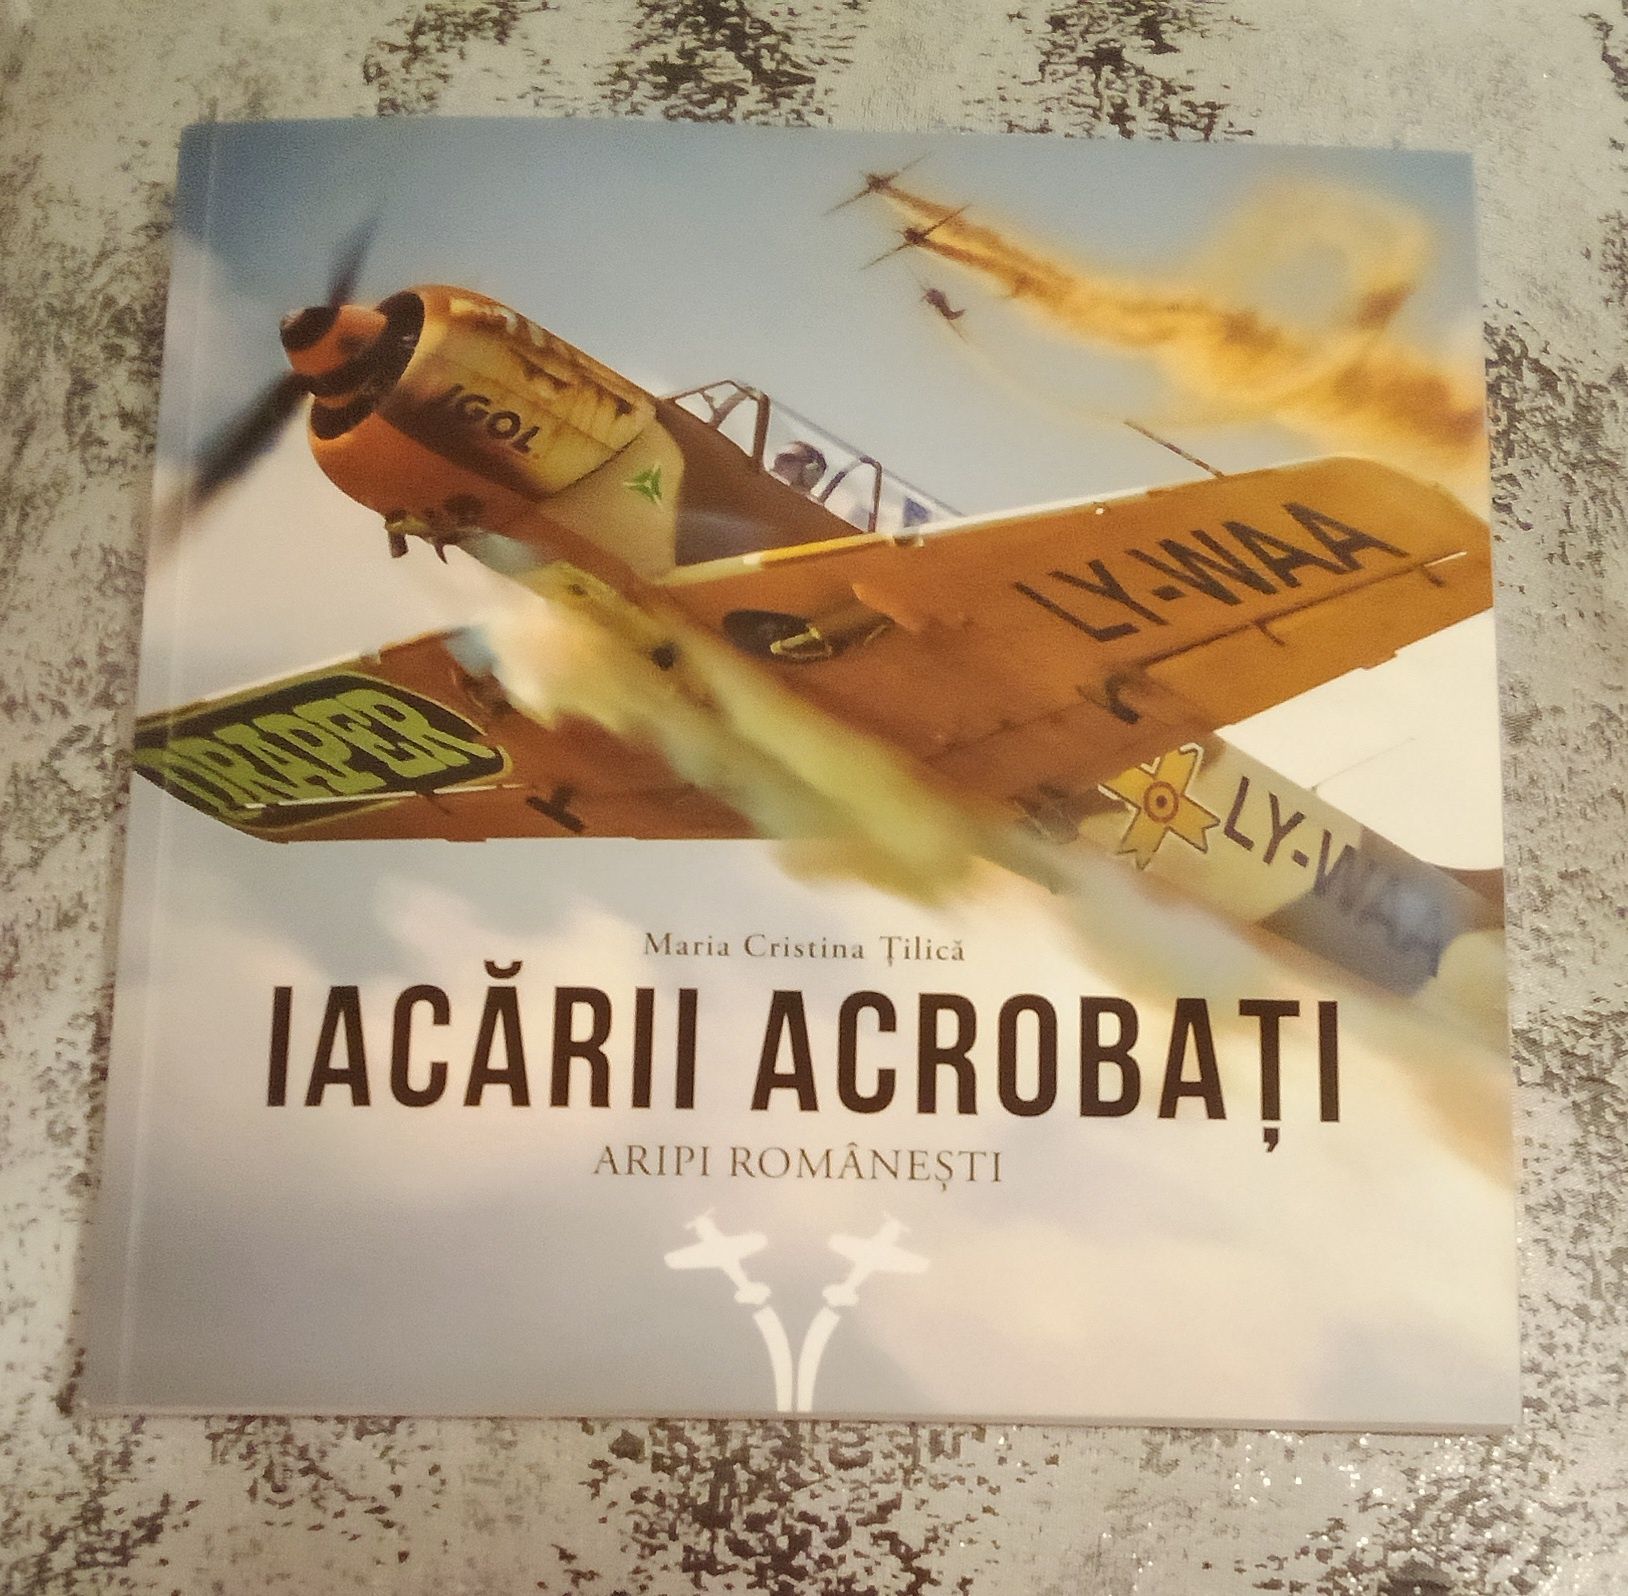 Carte "Iacarii acrobati. Aripi romanesti" de M. C. Tilica